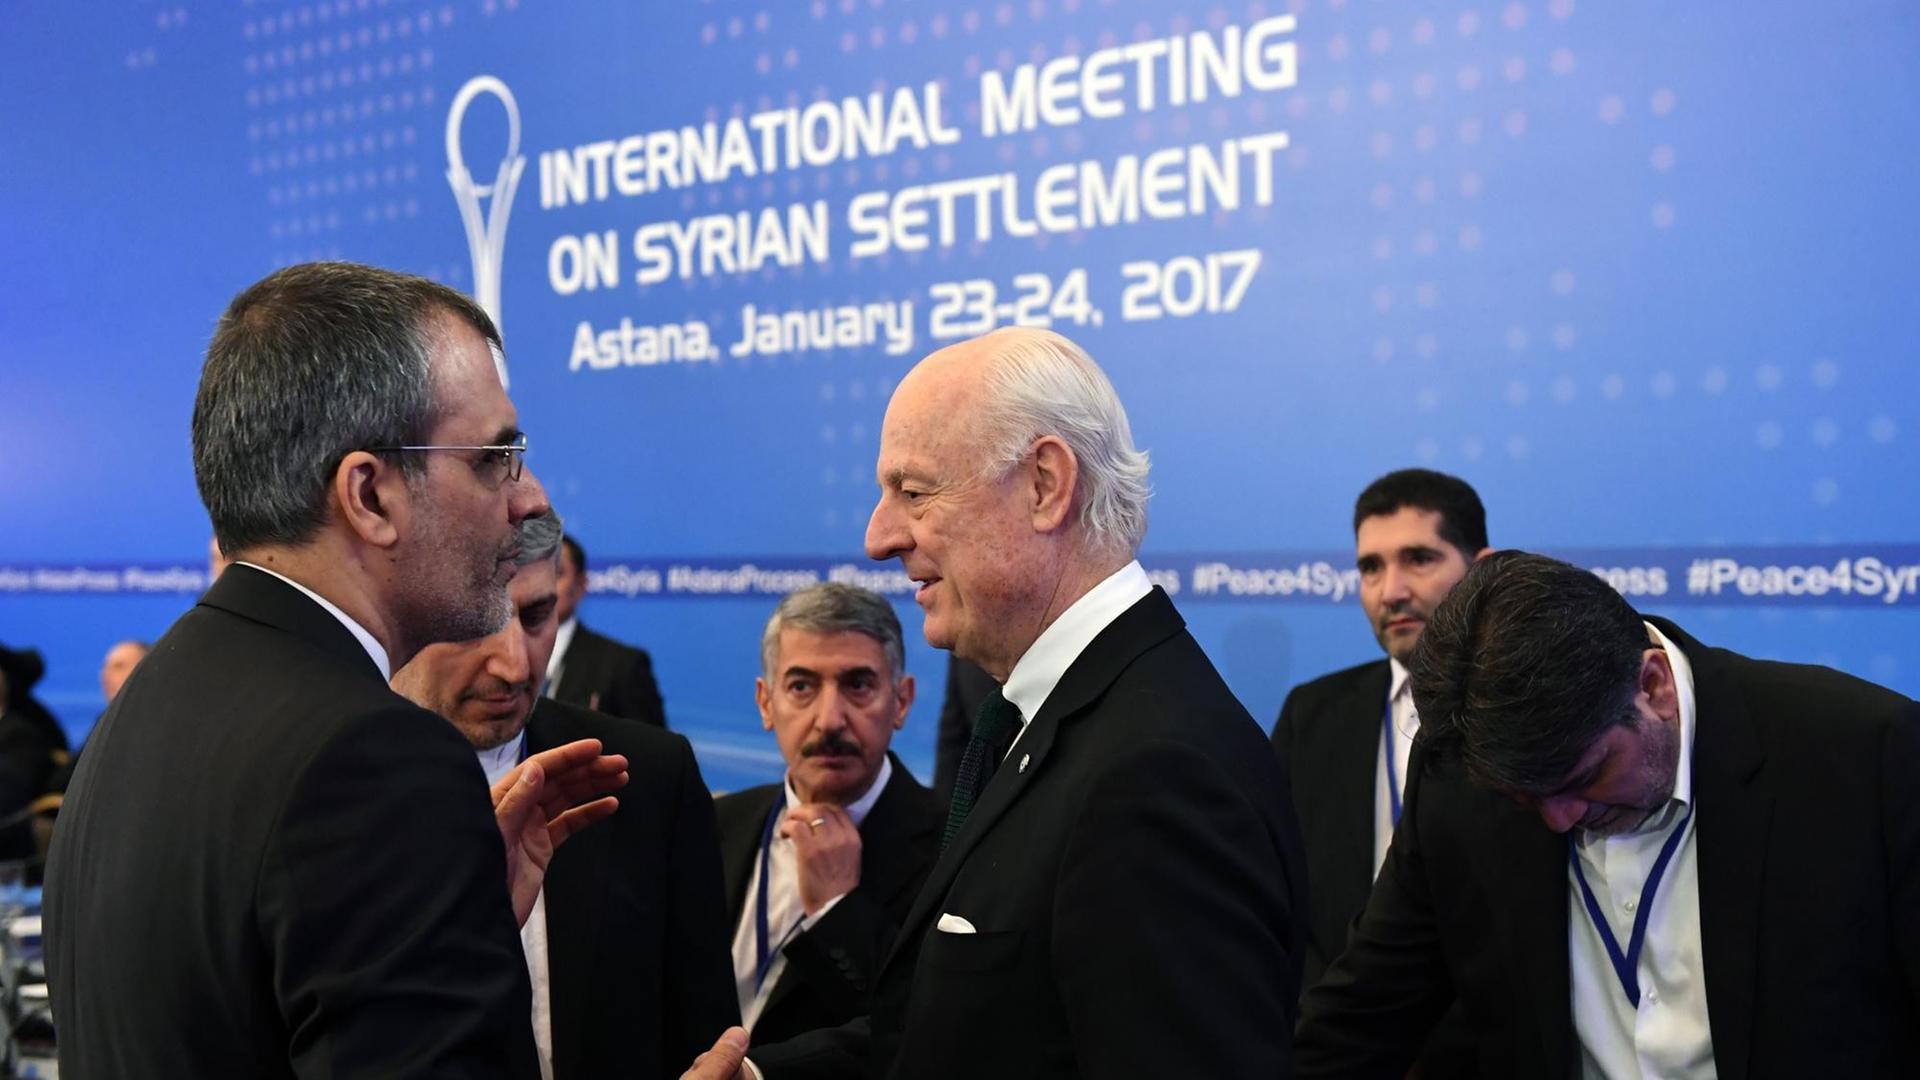 Der UN-Sondergesandte für Syrien, Staffan de Mistura (mitte), zusammen mit einer iranischen Delegation vor den ersten Gesprächen im kasachischen Astana zum Frieden in Syrien am 23. Januar 2017.